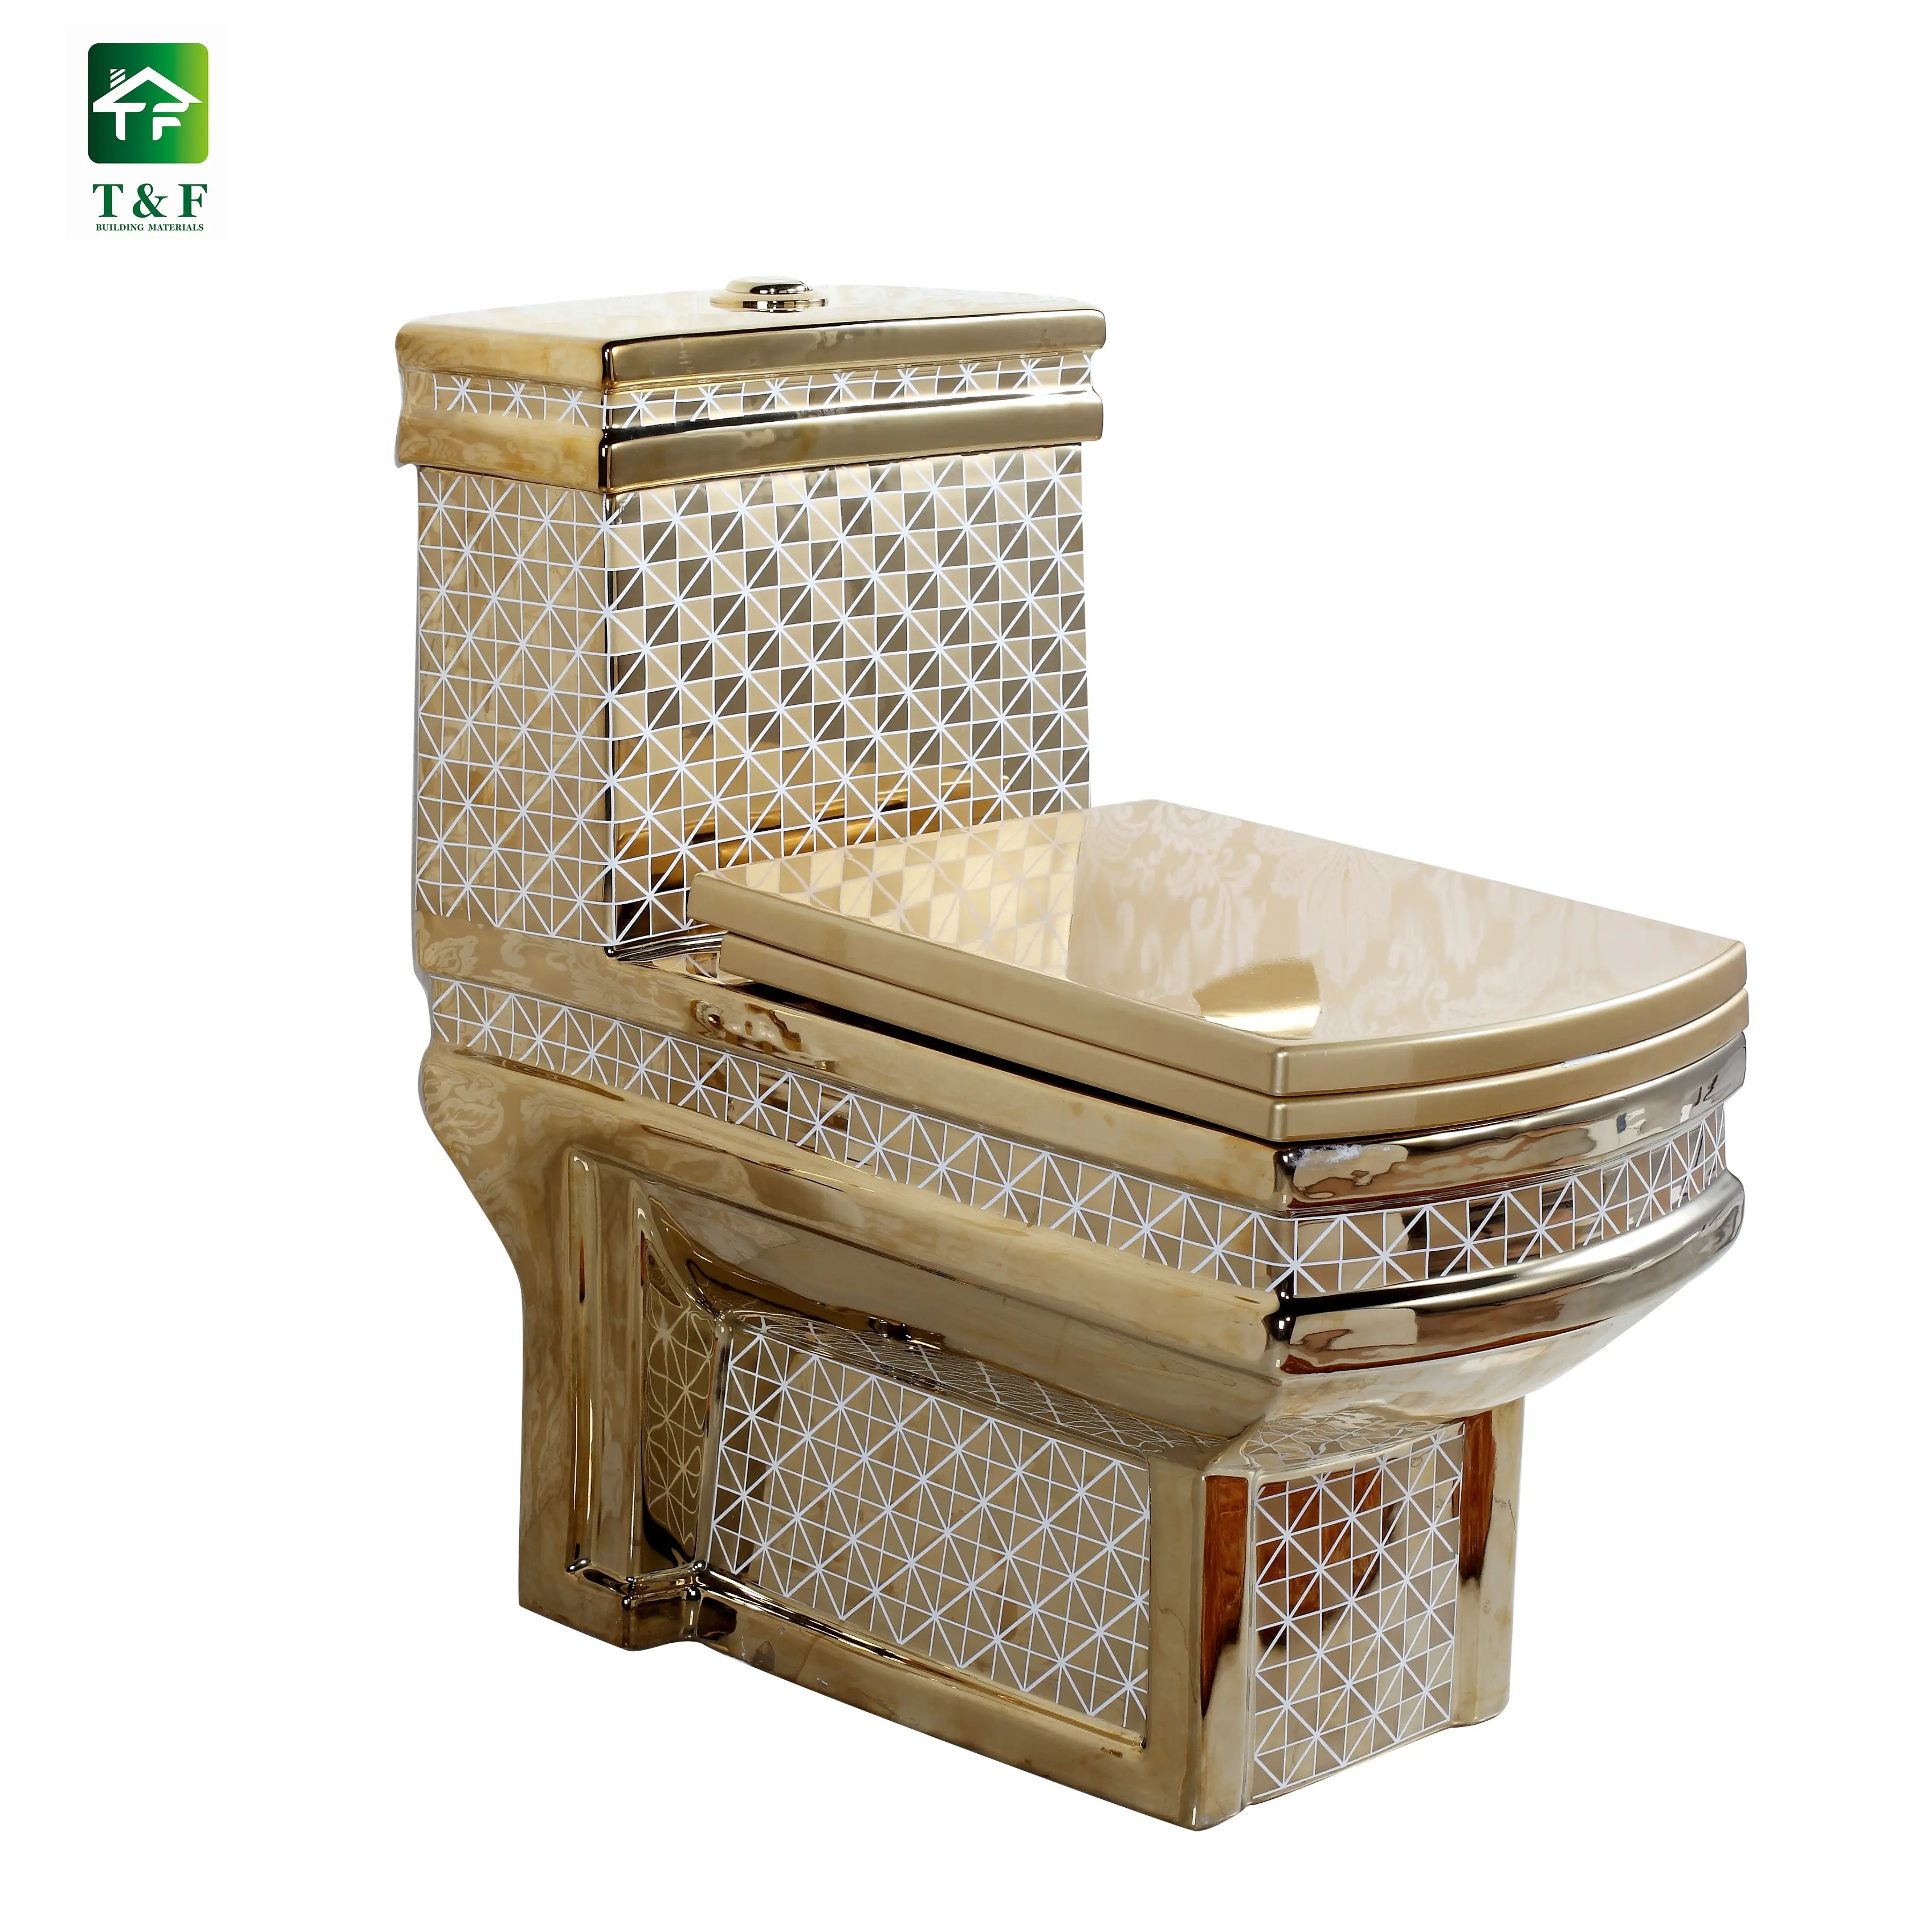 Новый дизайн унитаза, горячая Распродажа, роскошный дизайн, керамическое покрытие, золотой цвет, унитаз для ванной